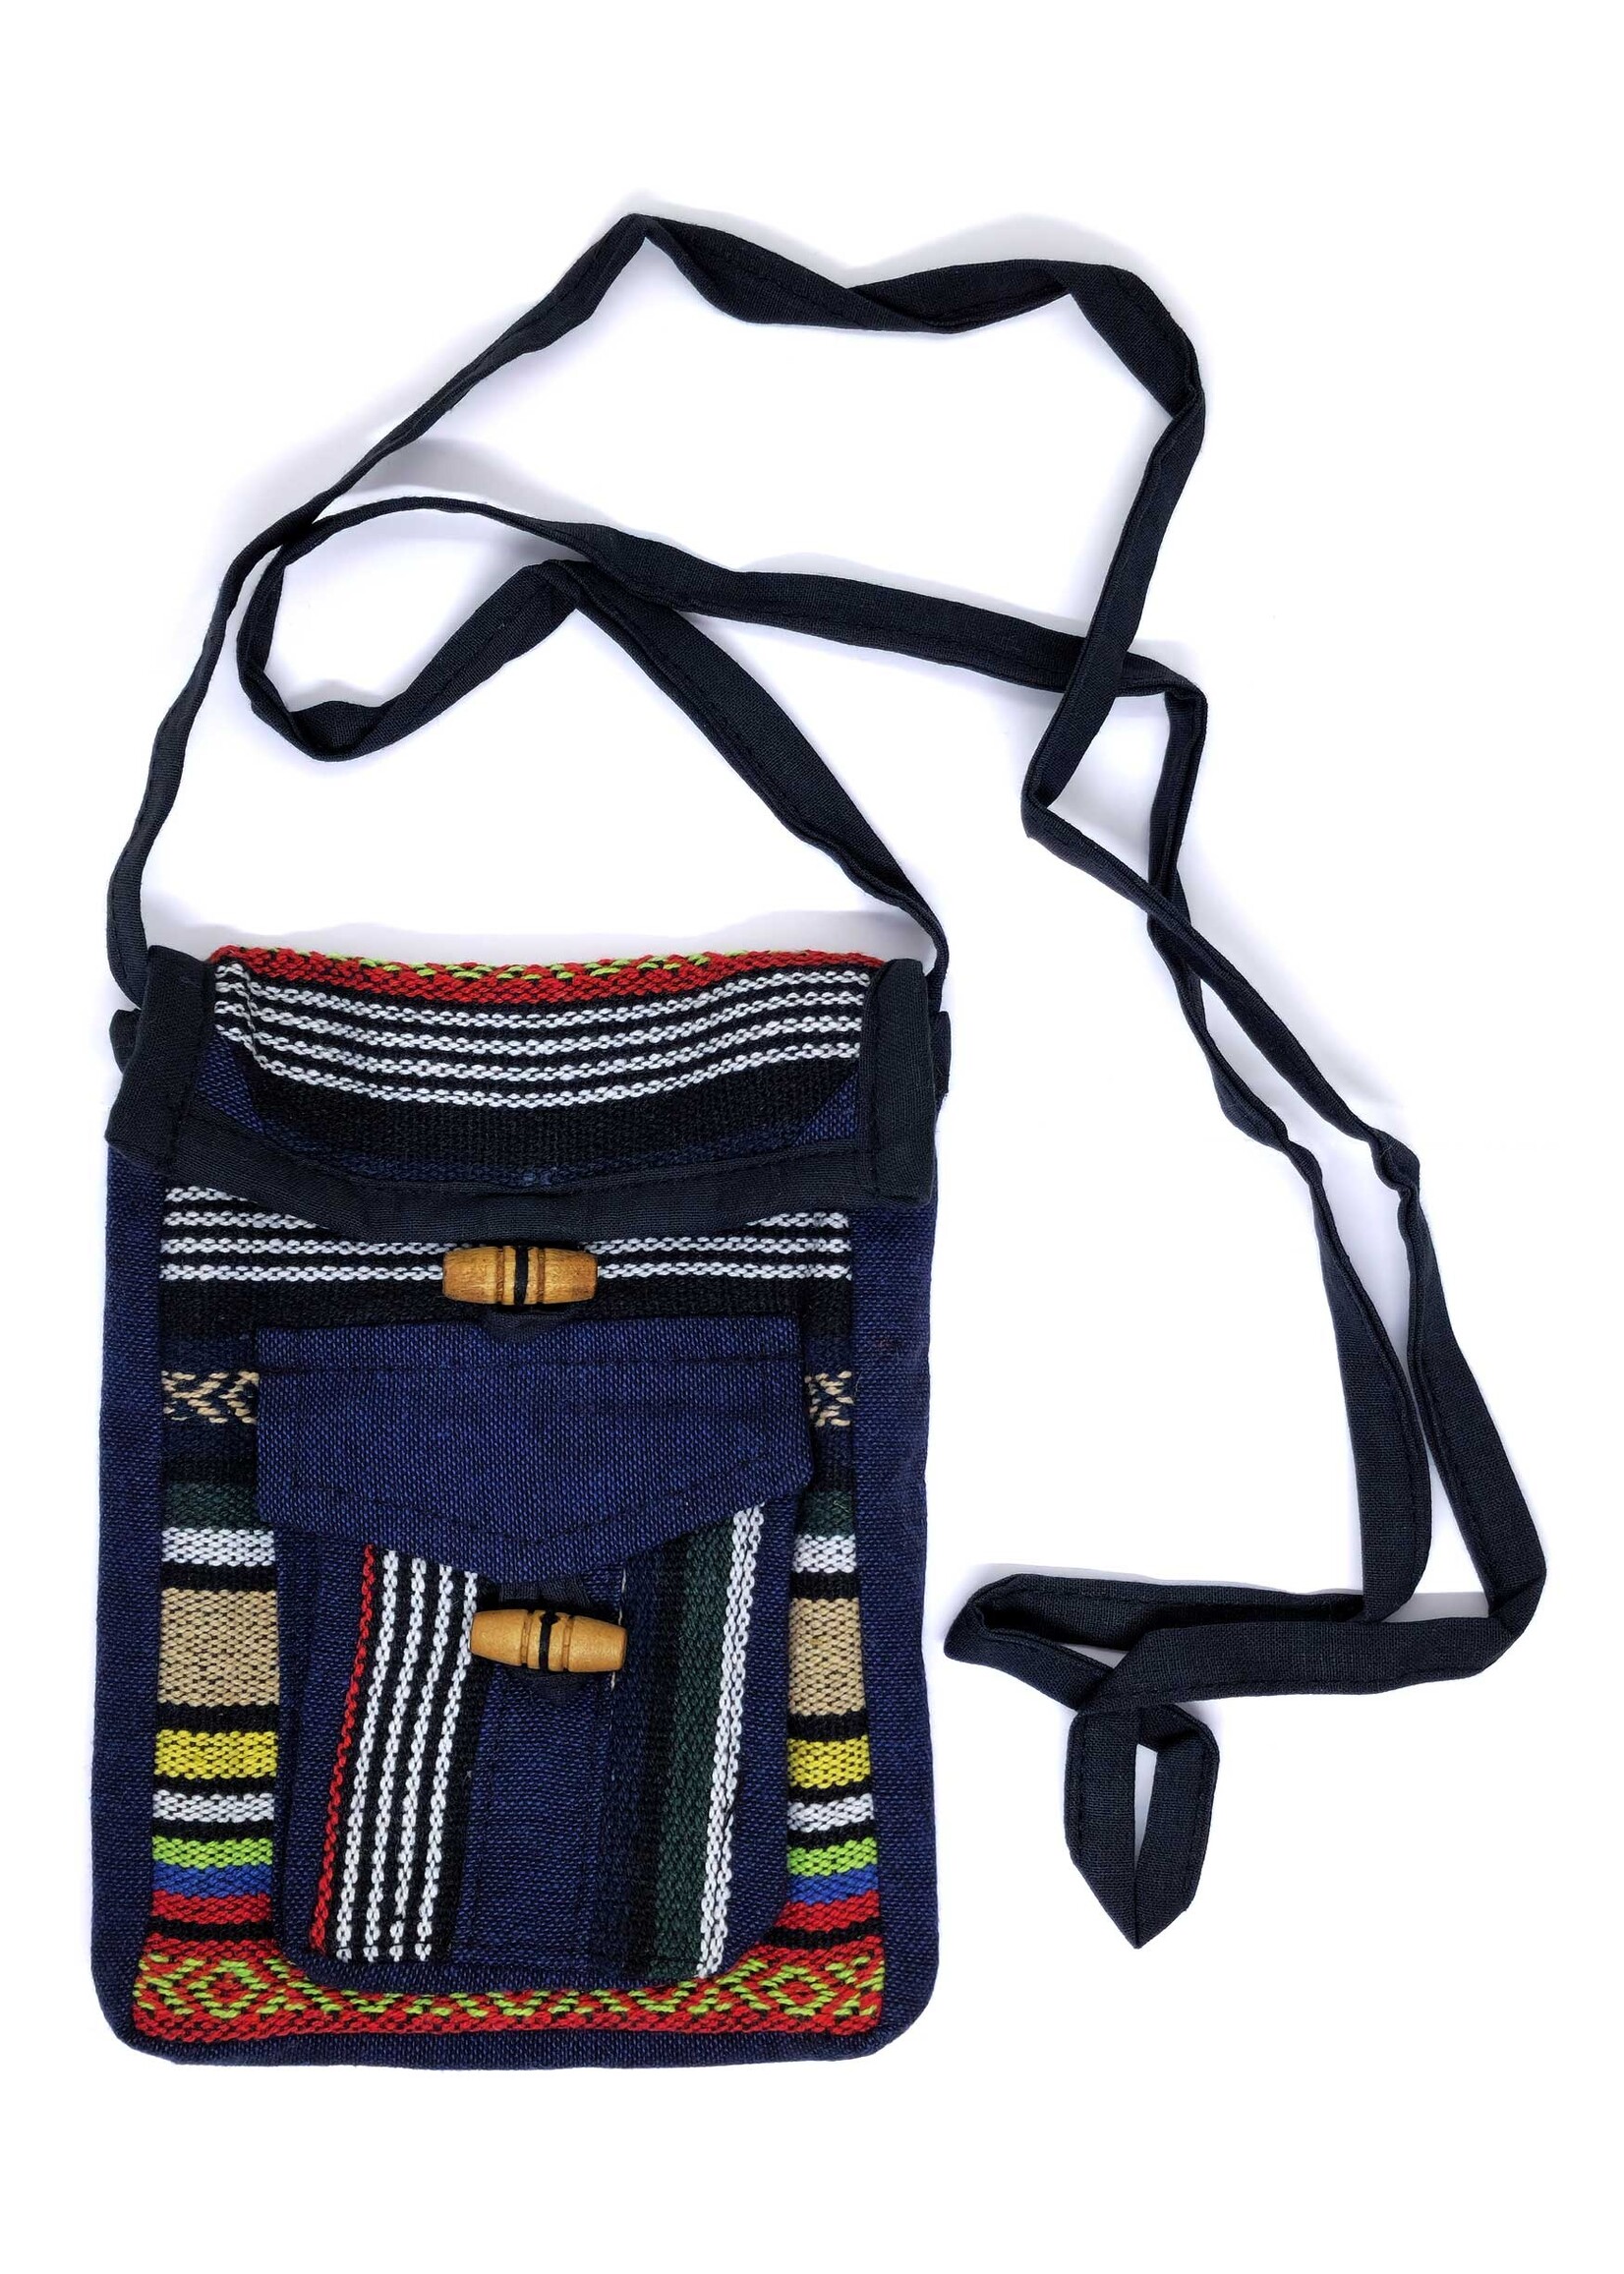 Small Tibetan Shoulder Bag, Made of Hand-Loomed Cotton, Ngonag